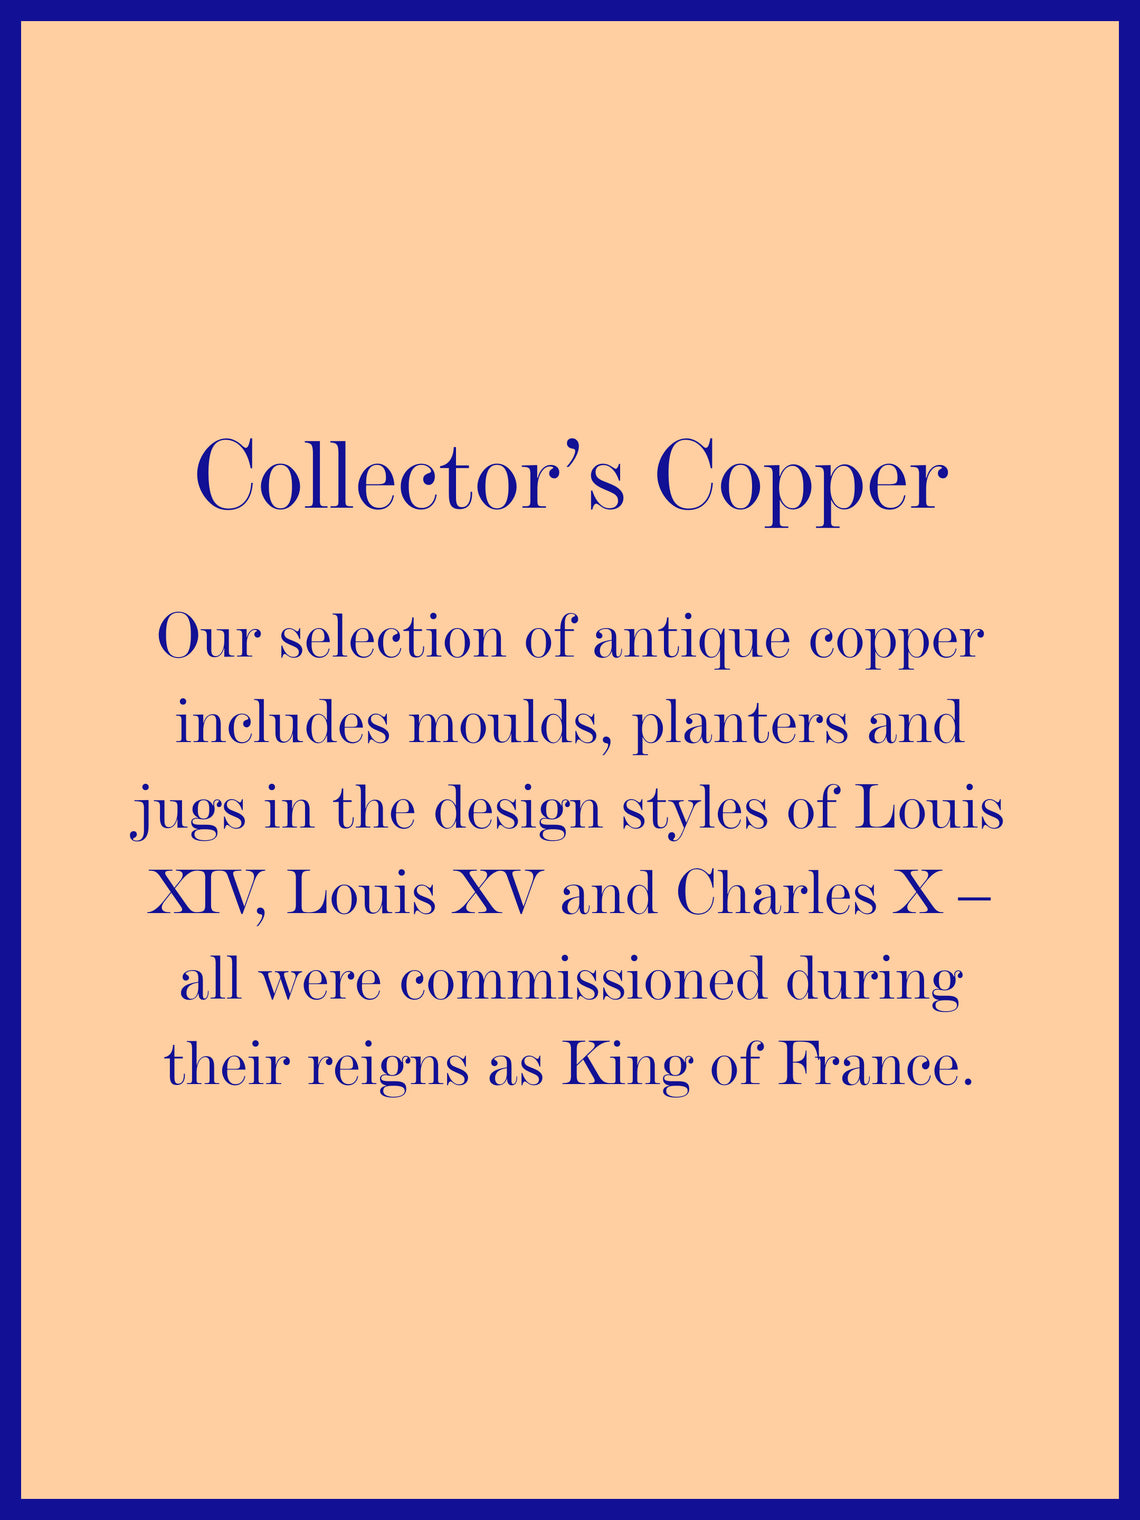 1900s Art Nouveau Copper Decorative Planter